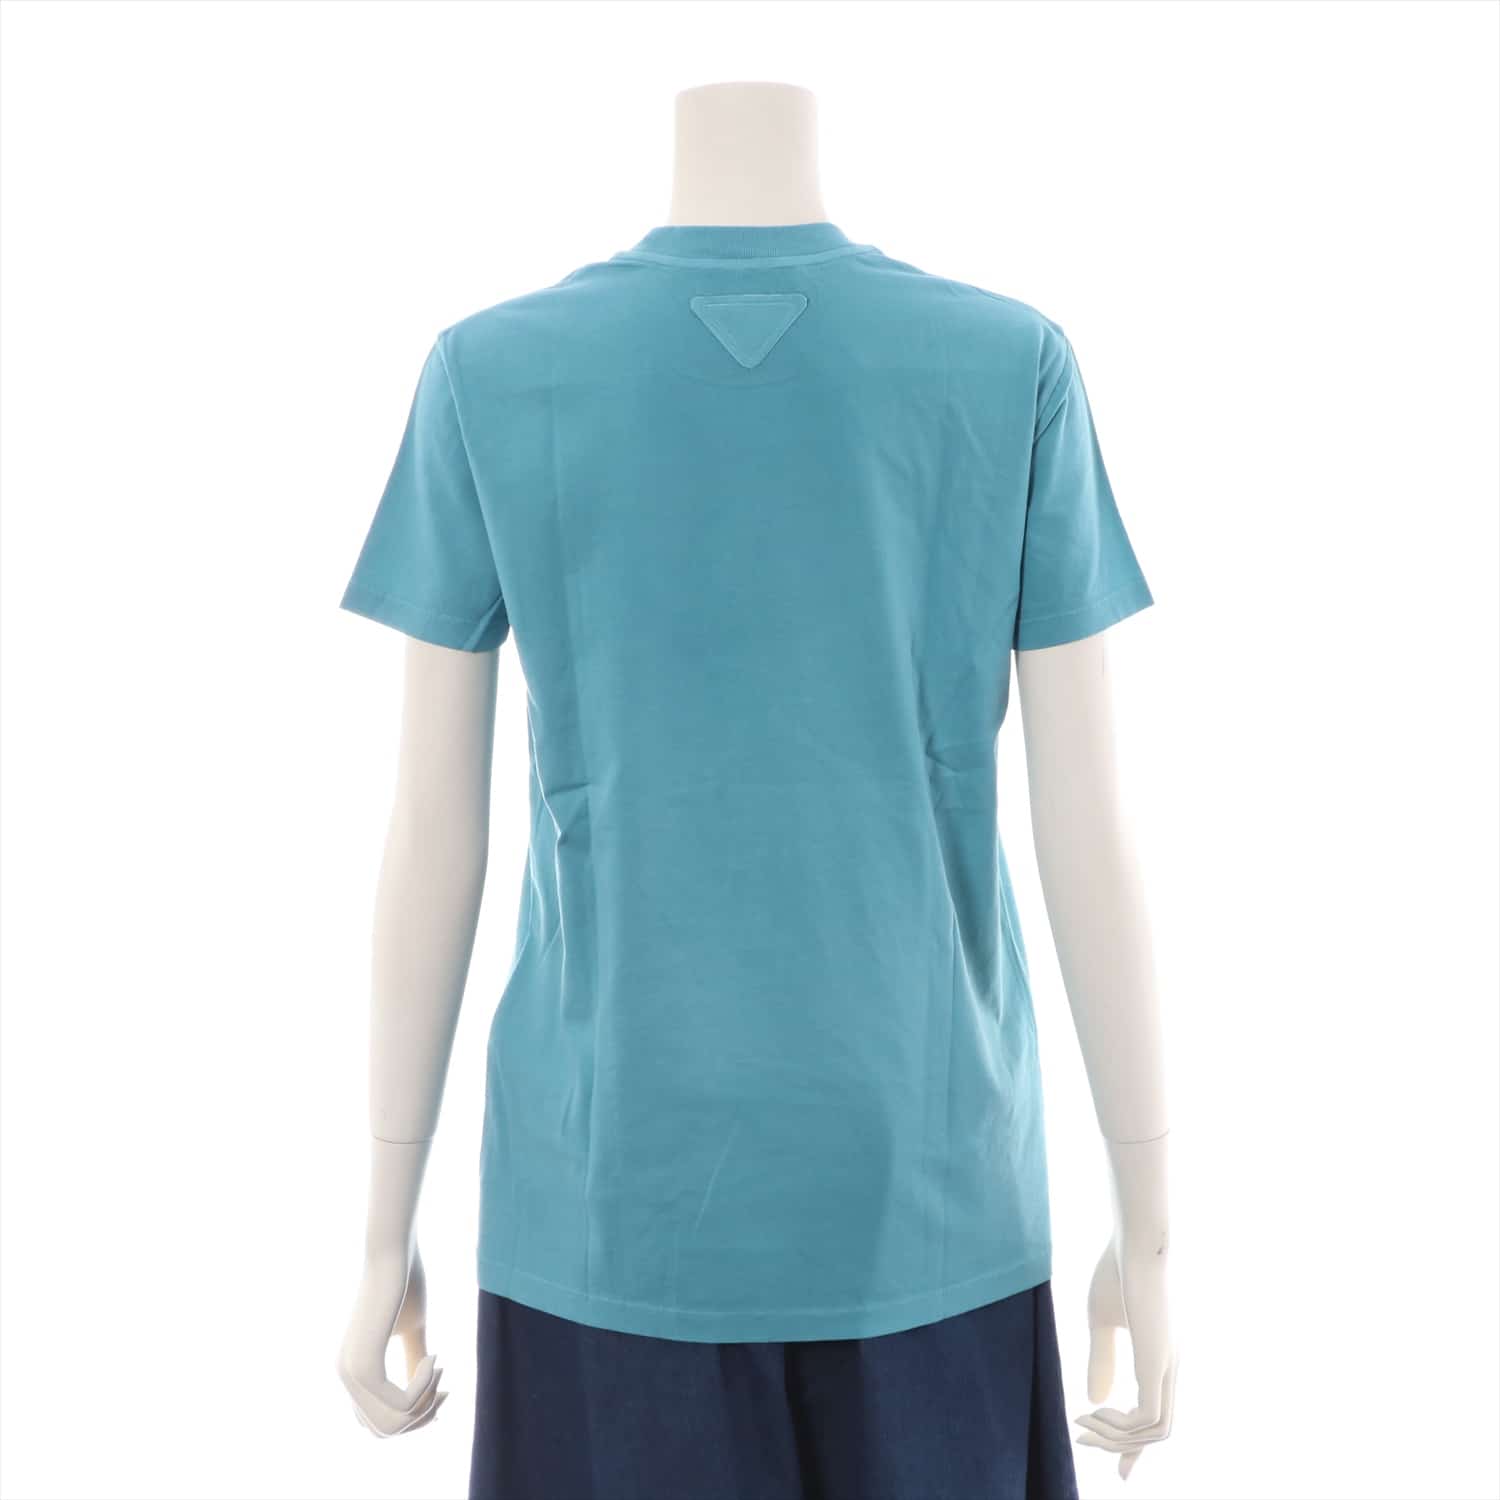 プラダ コットン Tシャツ XS メンズ ターコイズ バッグ三角ロゴ